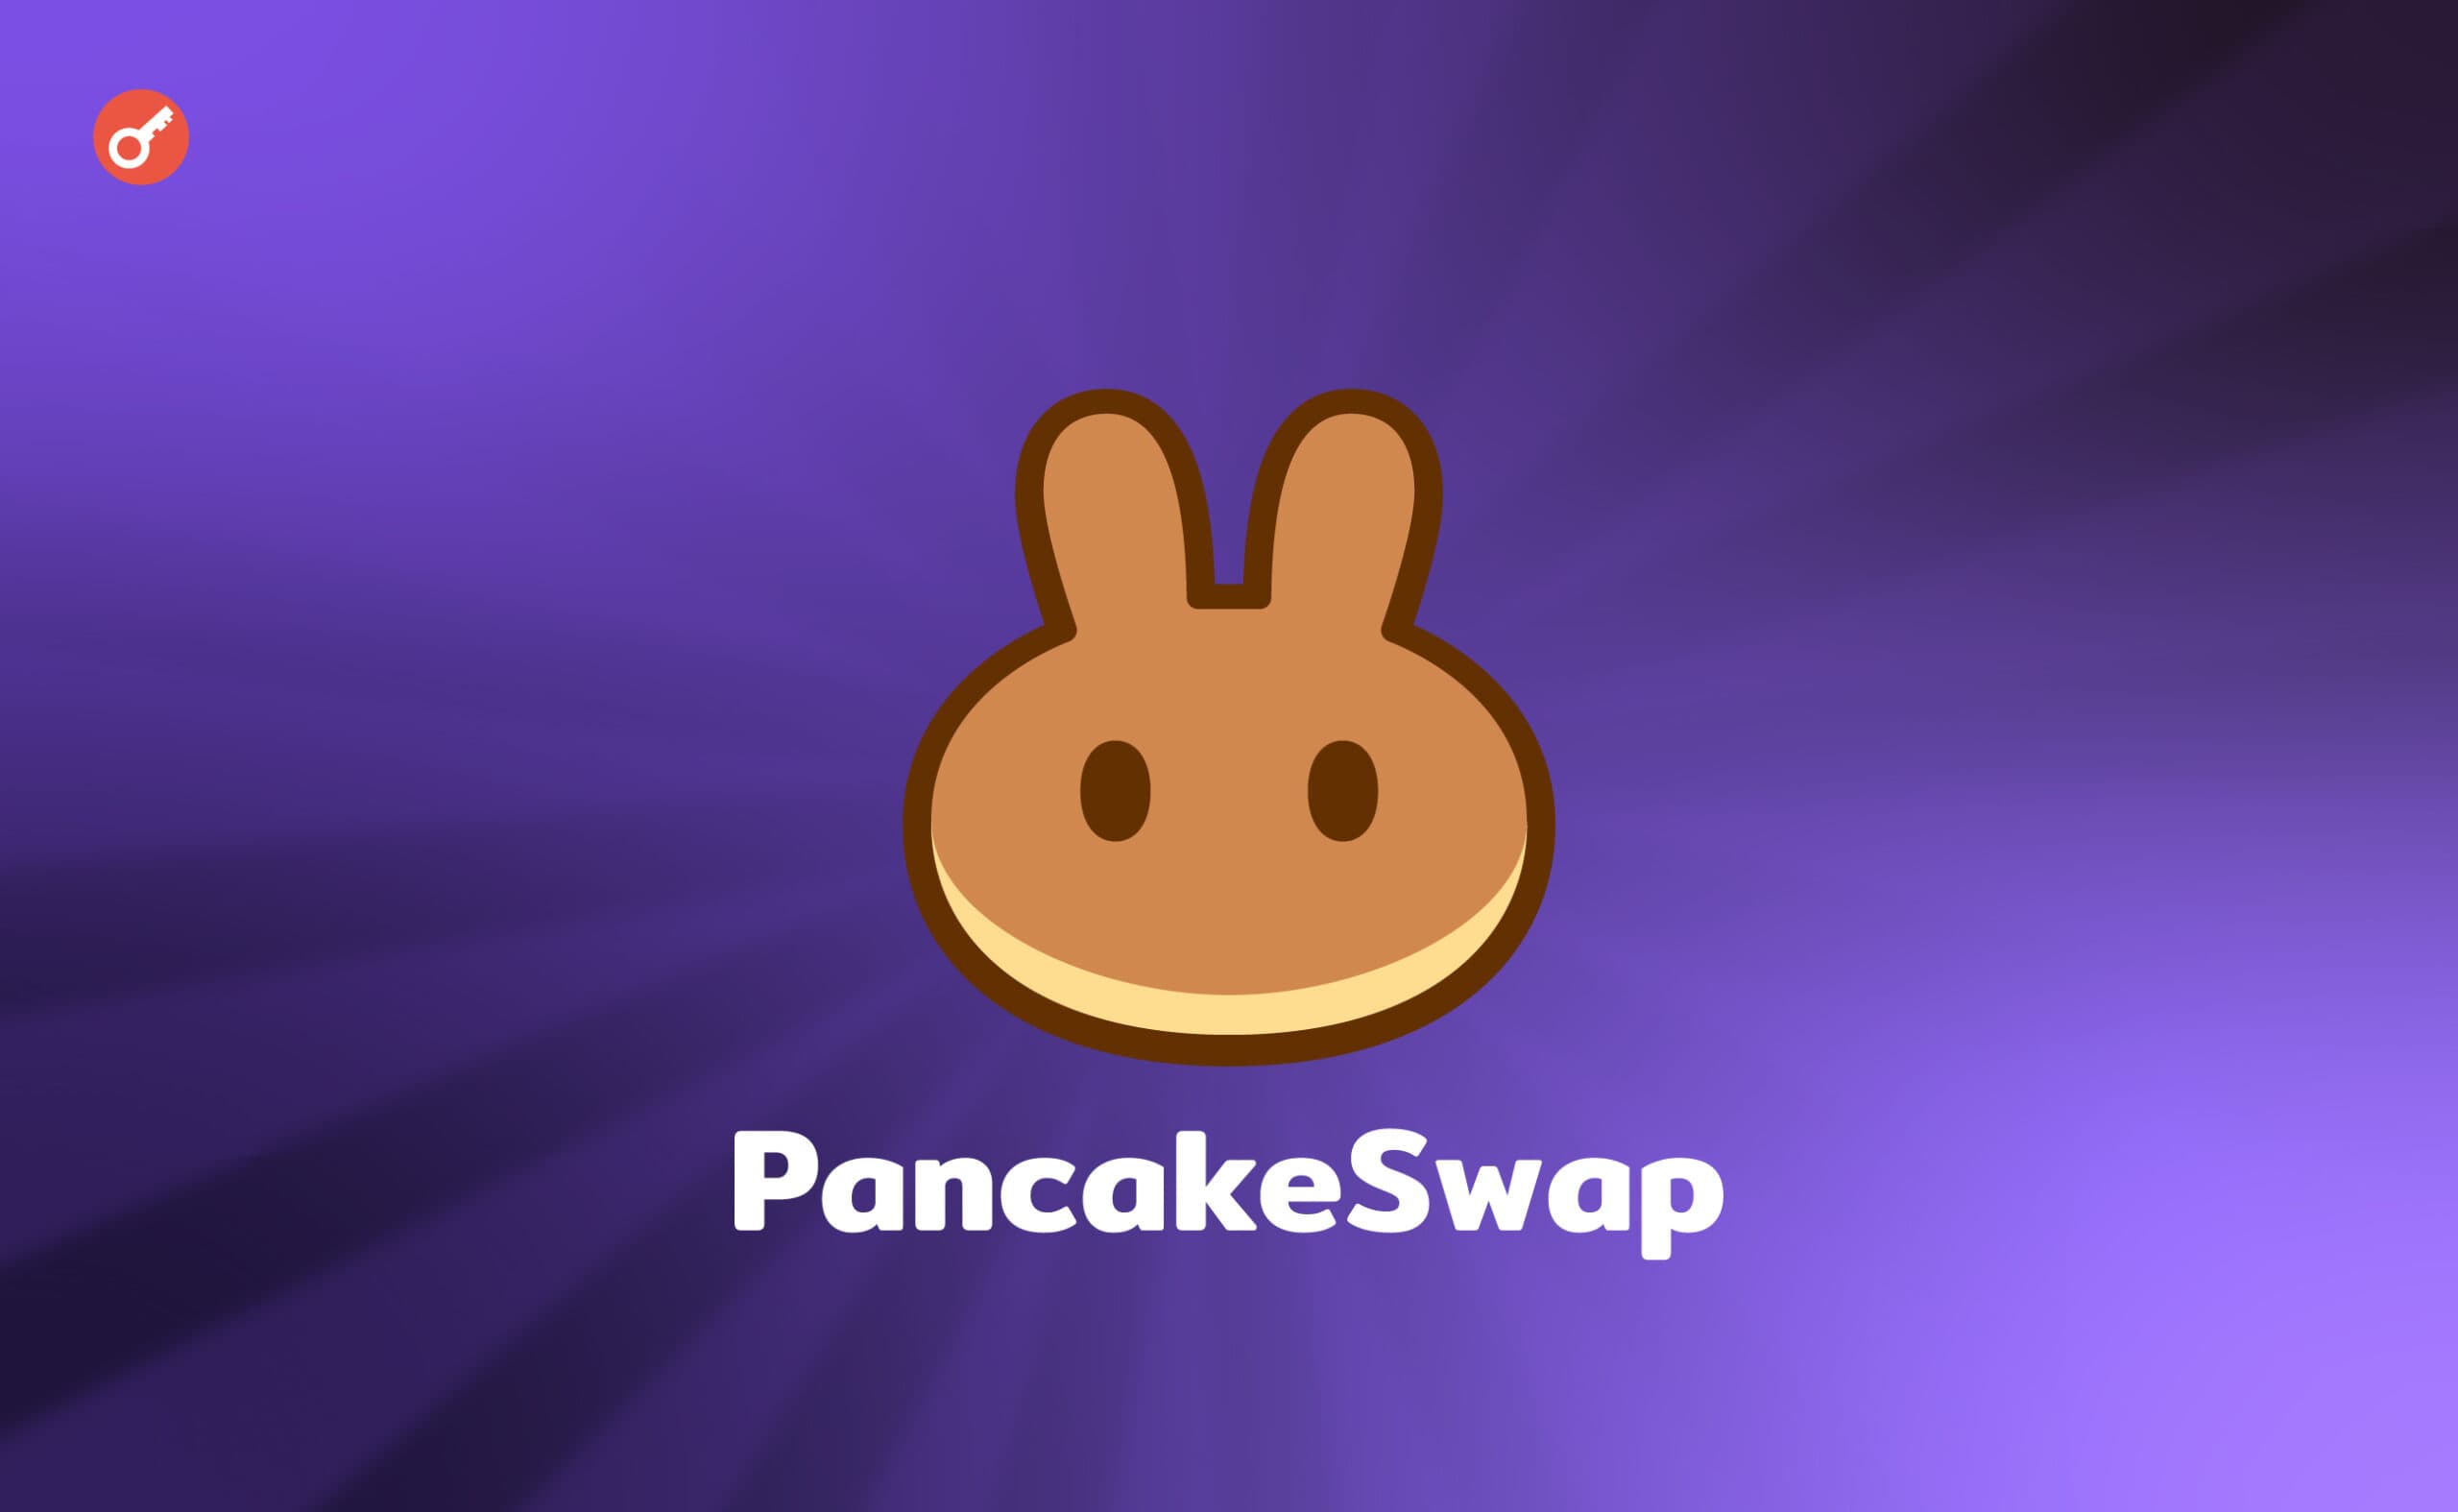 В PancakeSwap предложили сократить предложение токенов CAKE до 450 млн. Заглавный коллаж новости.